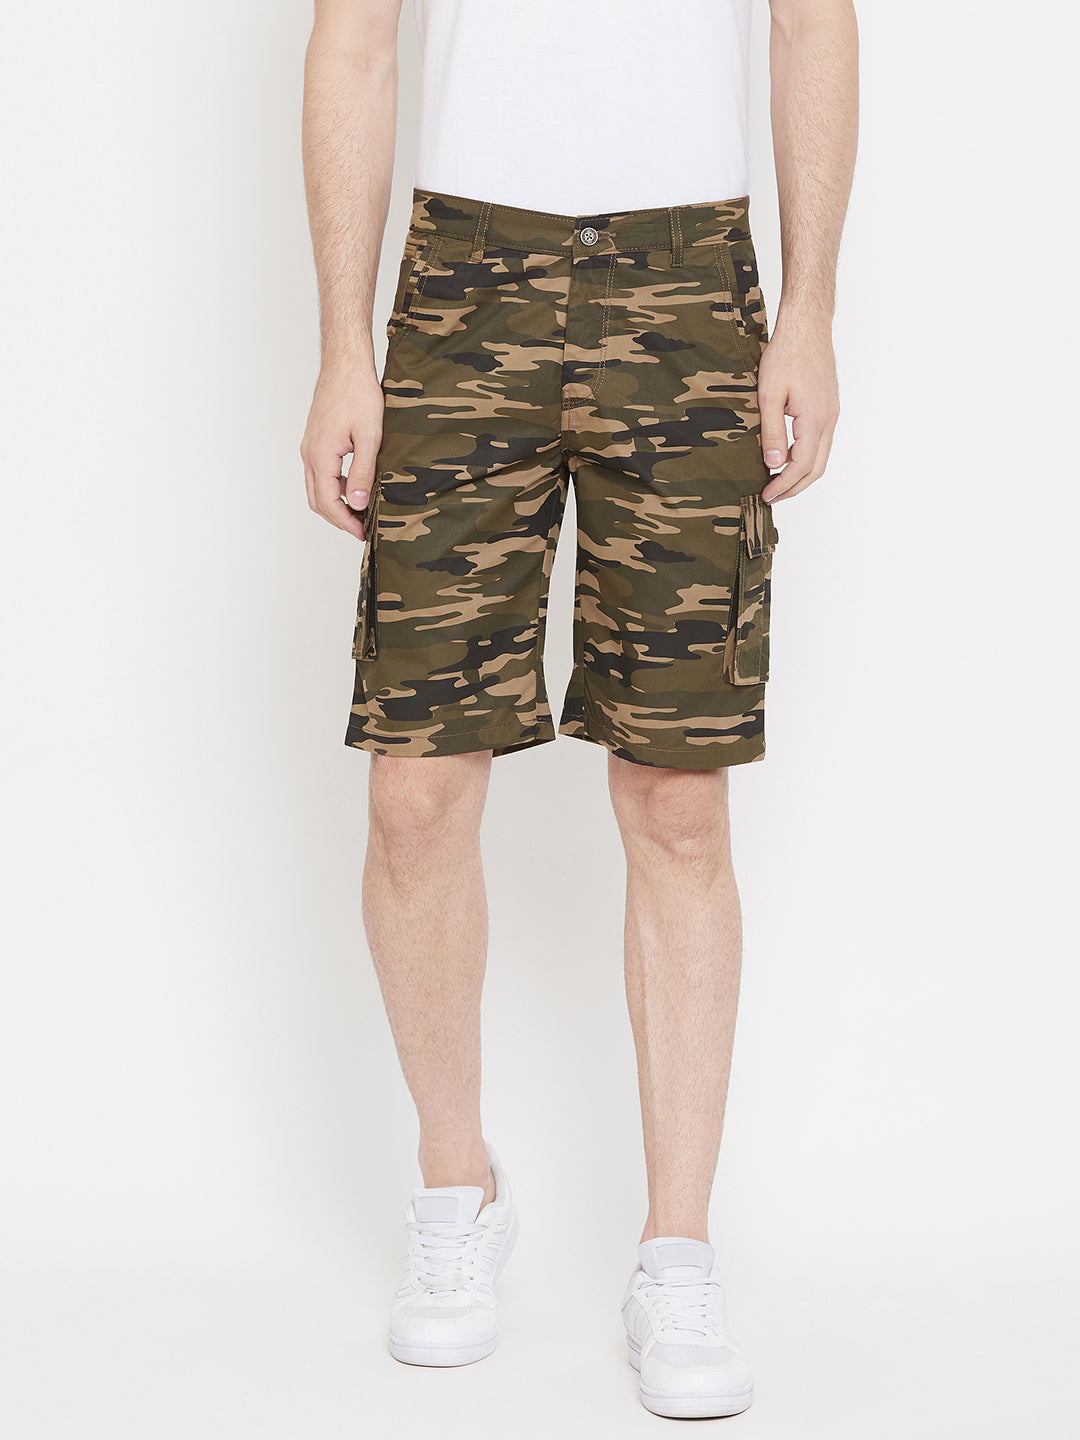 Olive Printed shorts - Men Shorts